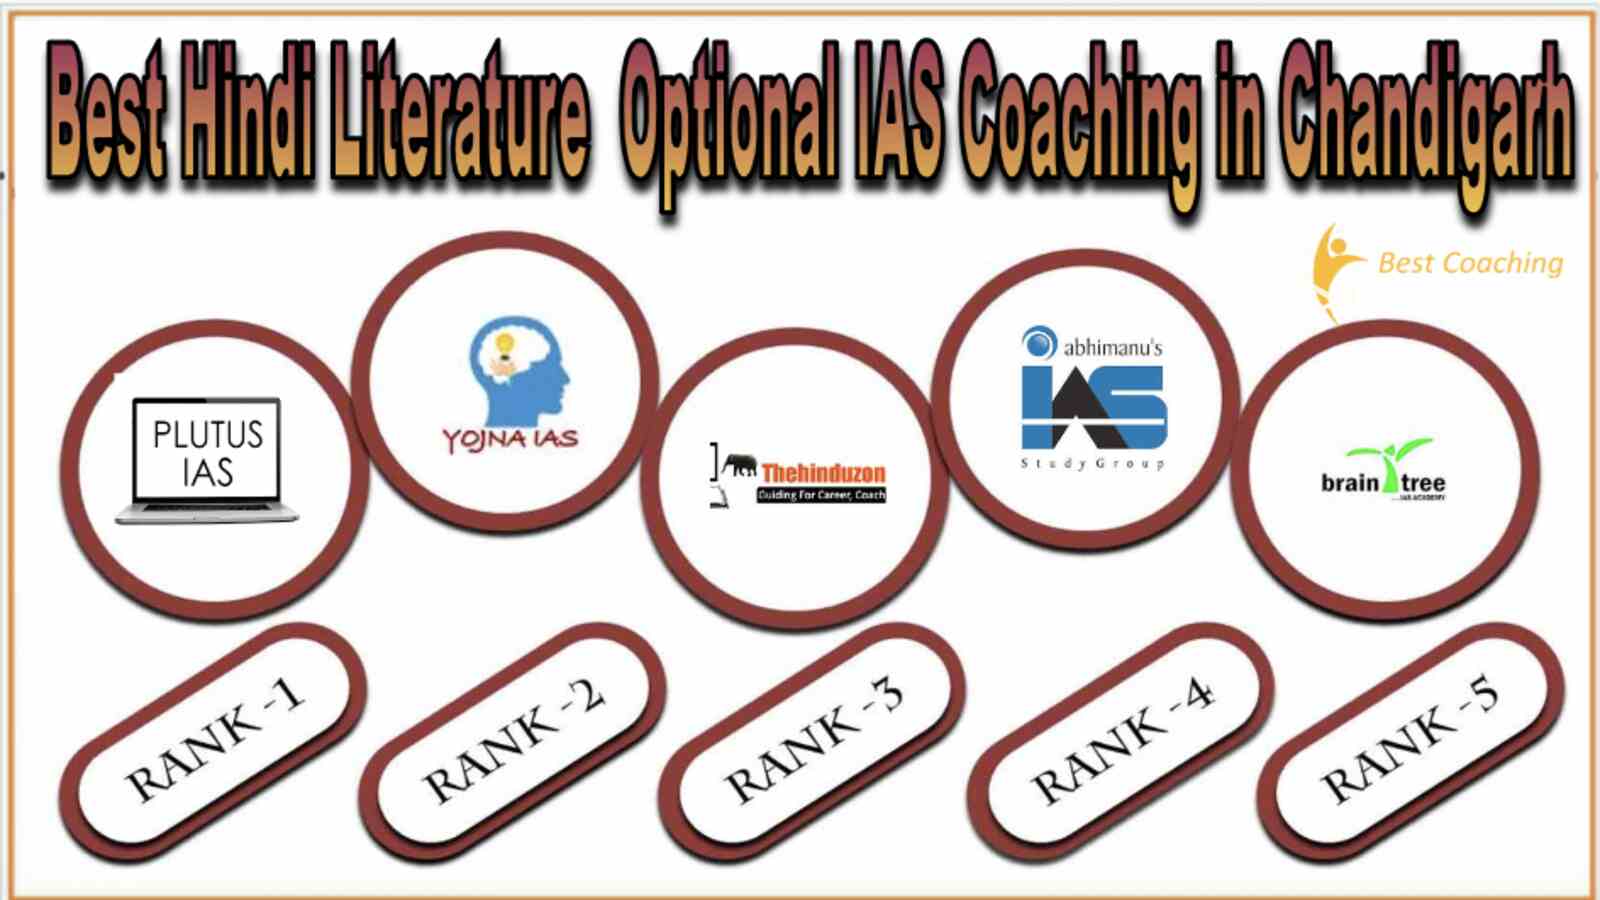 Best Hindi Literature Optional IAS Coaching in Chandigarh